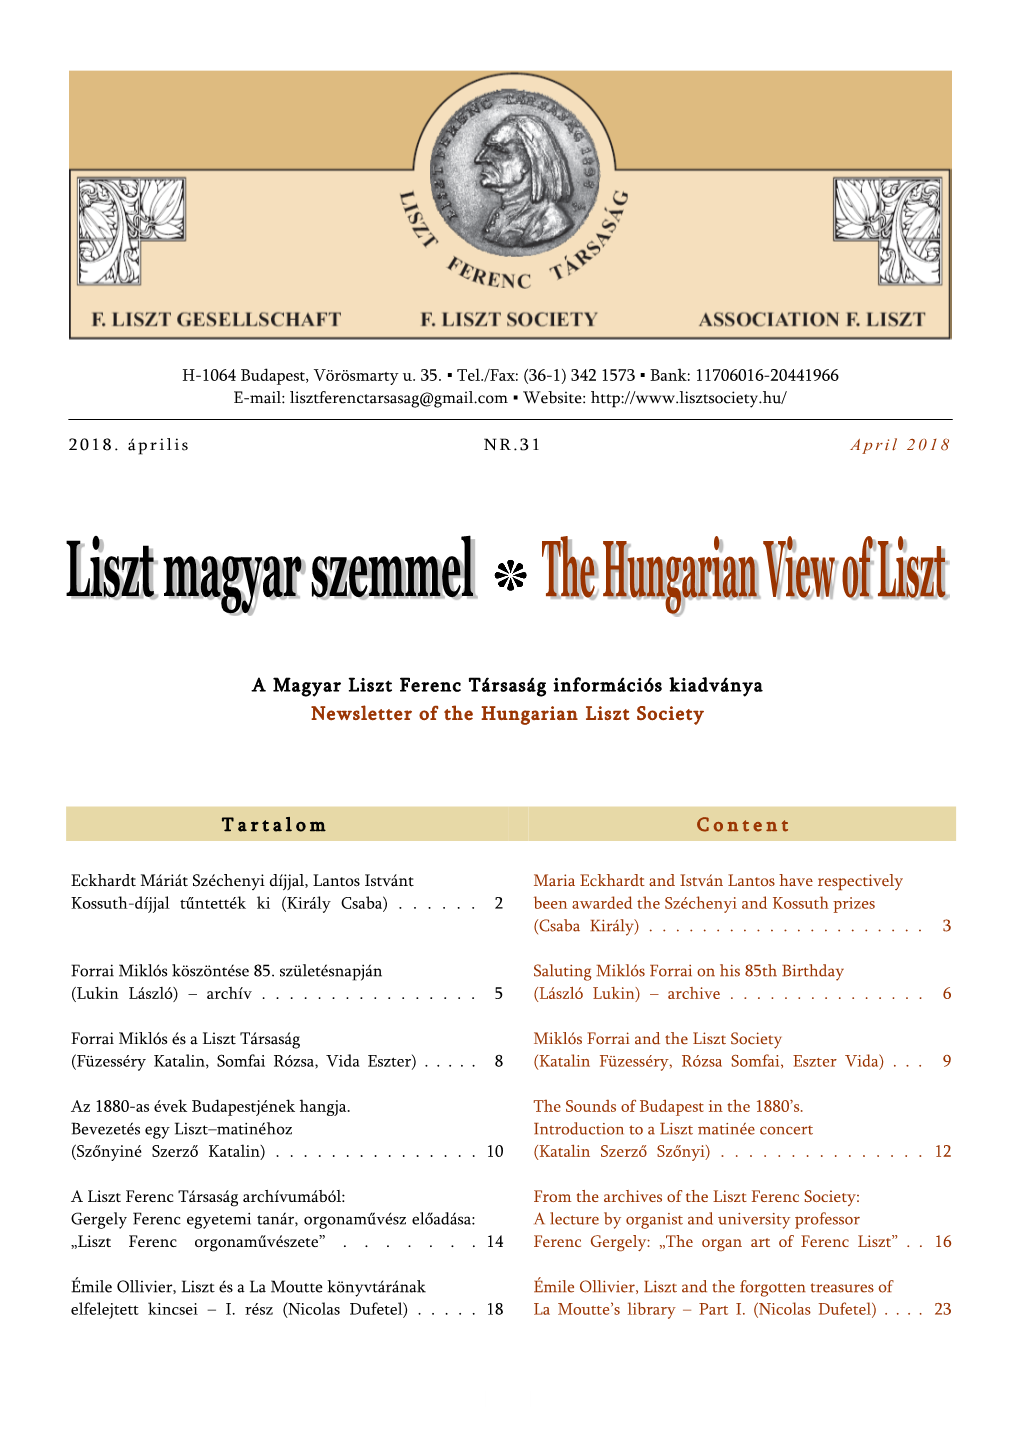 Liszt Magyar Szemmel = the Hungarian View of Liszt